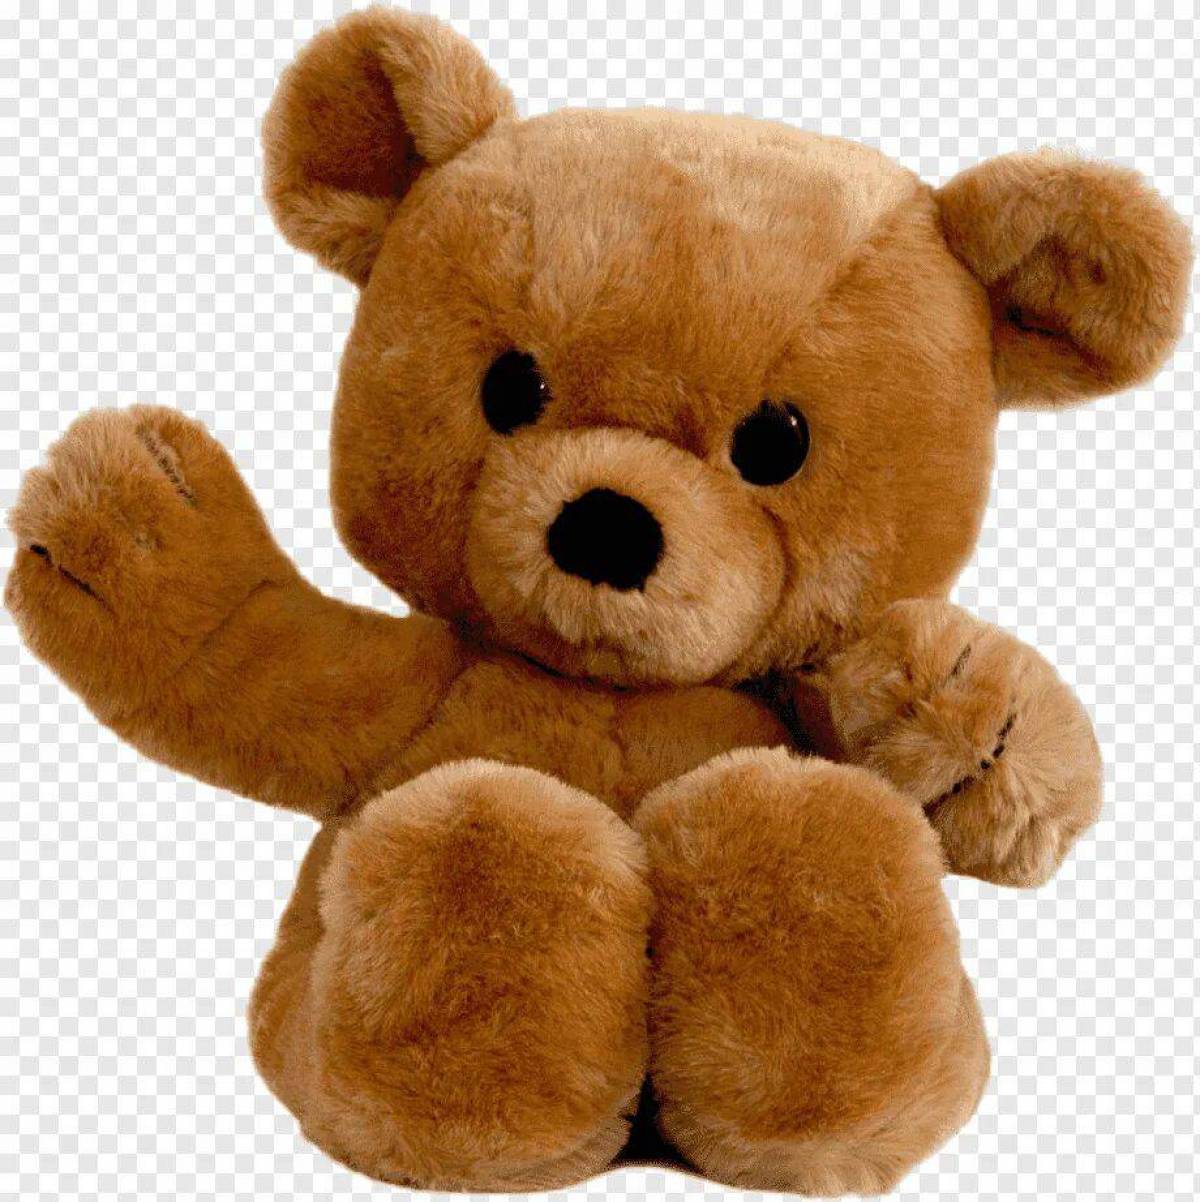 Toys медведь. Тедди Беар. Мягкие игрушки для детей. Плюшевый медведь. Игрушки мягкие плюшевые.